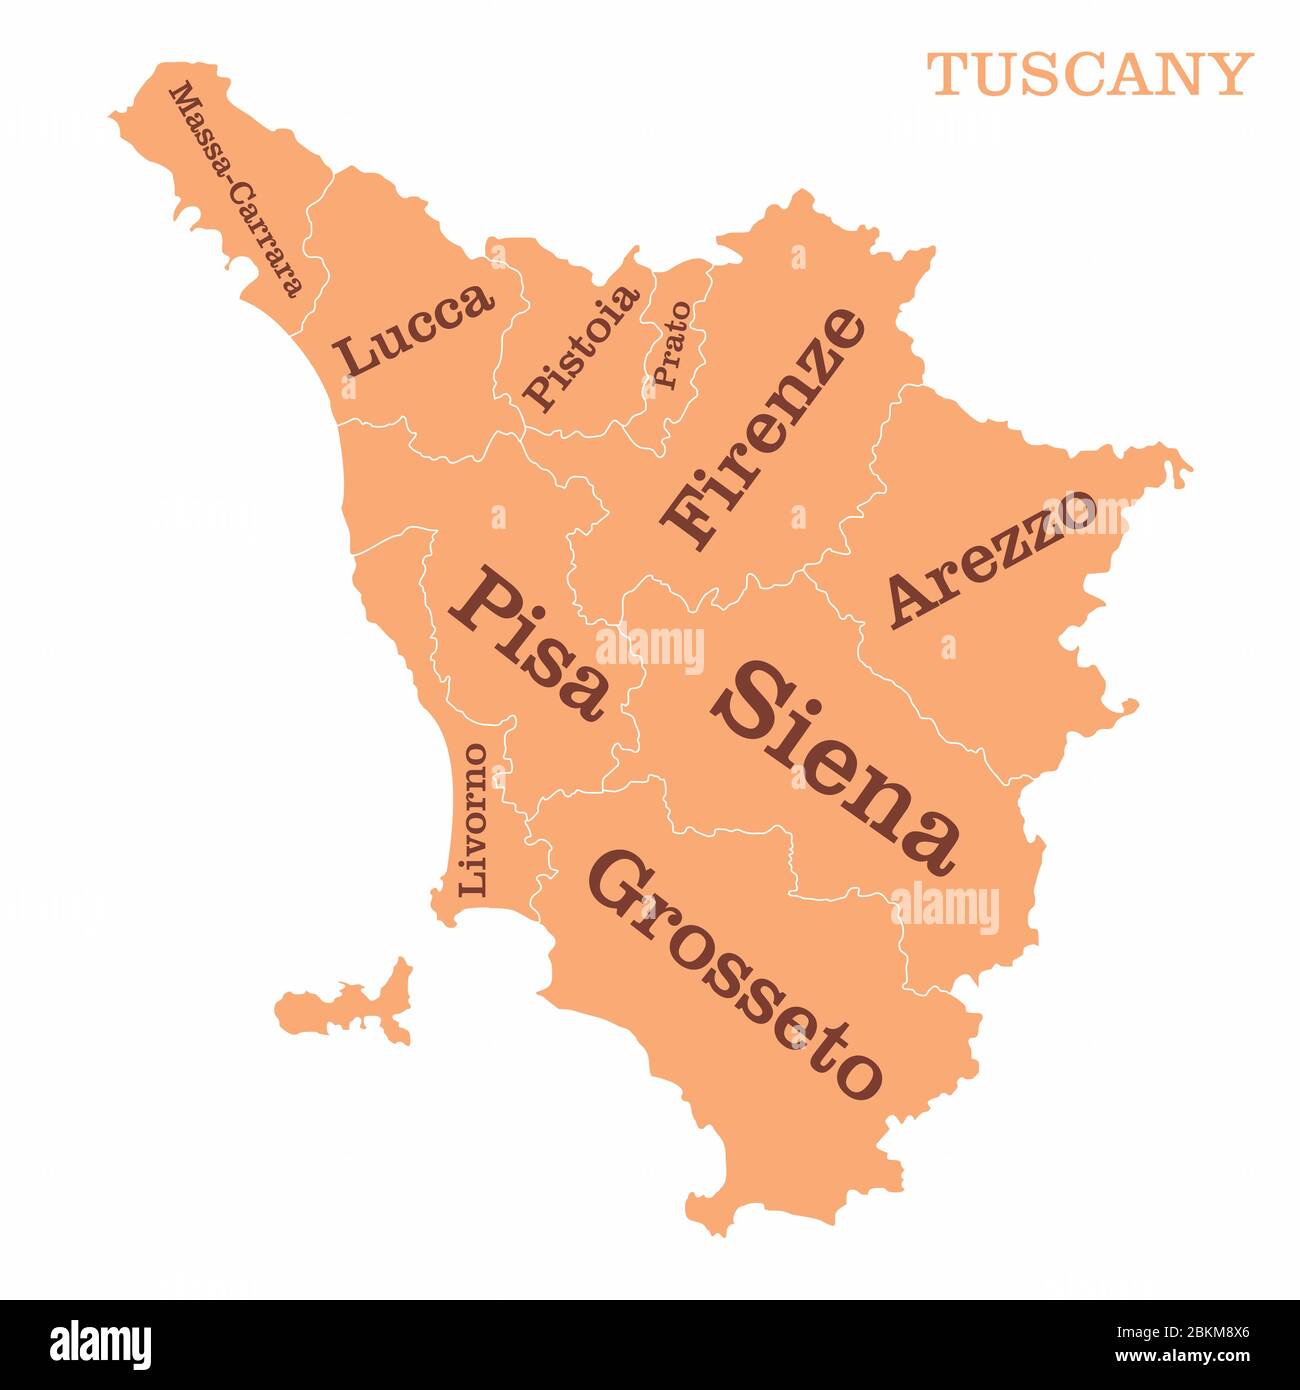 Tuscany regions map Stock Vector